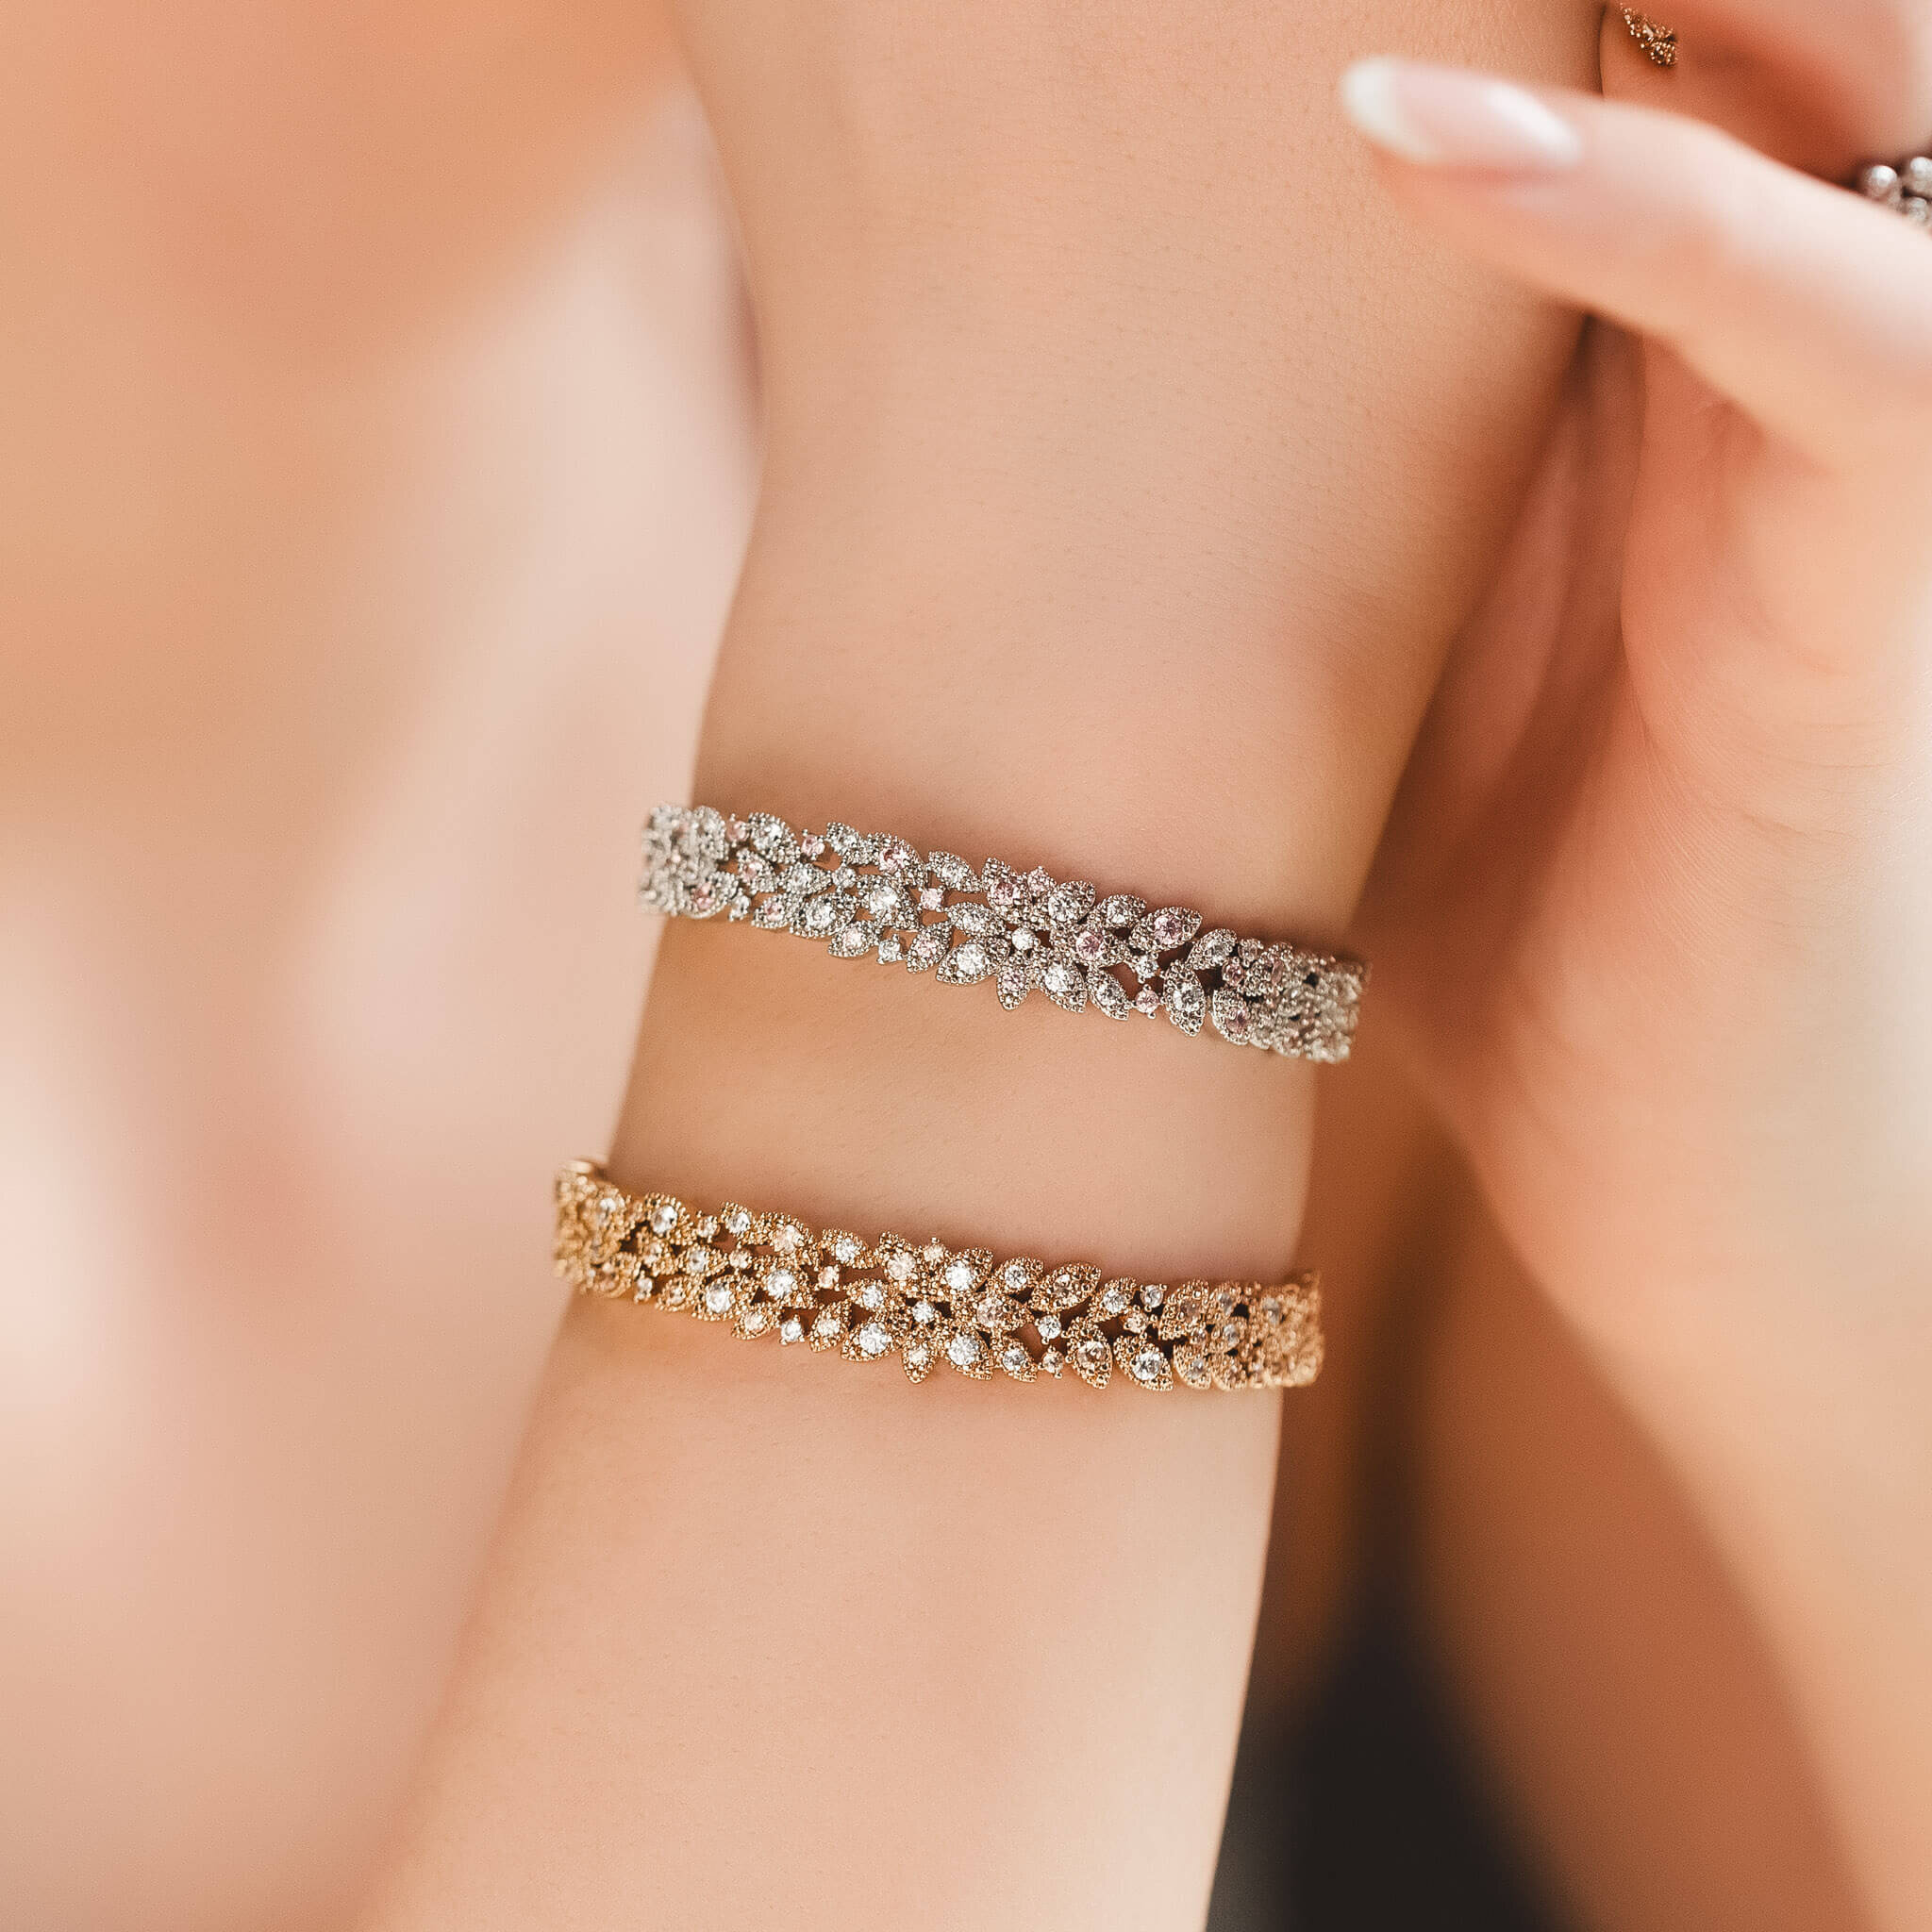 Laurel bracelet - gold